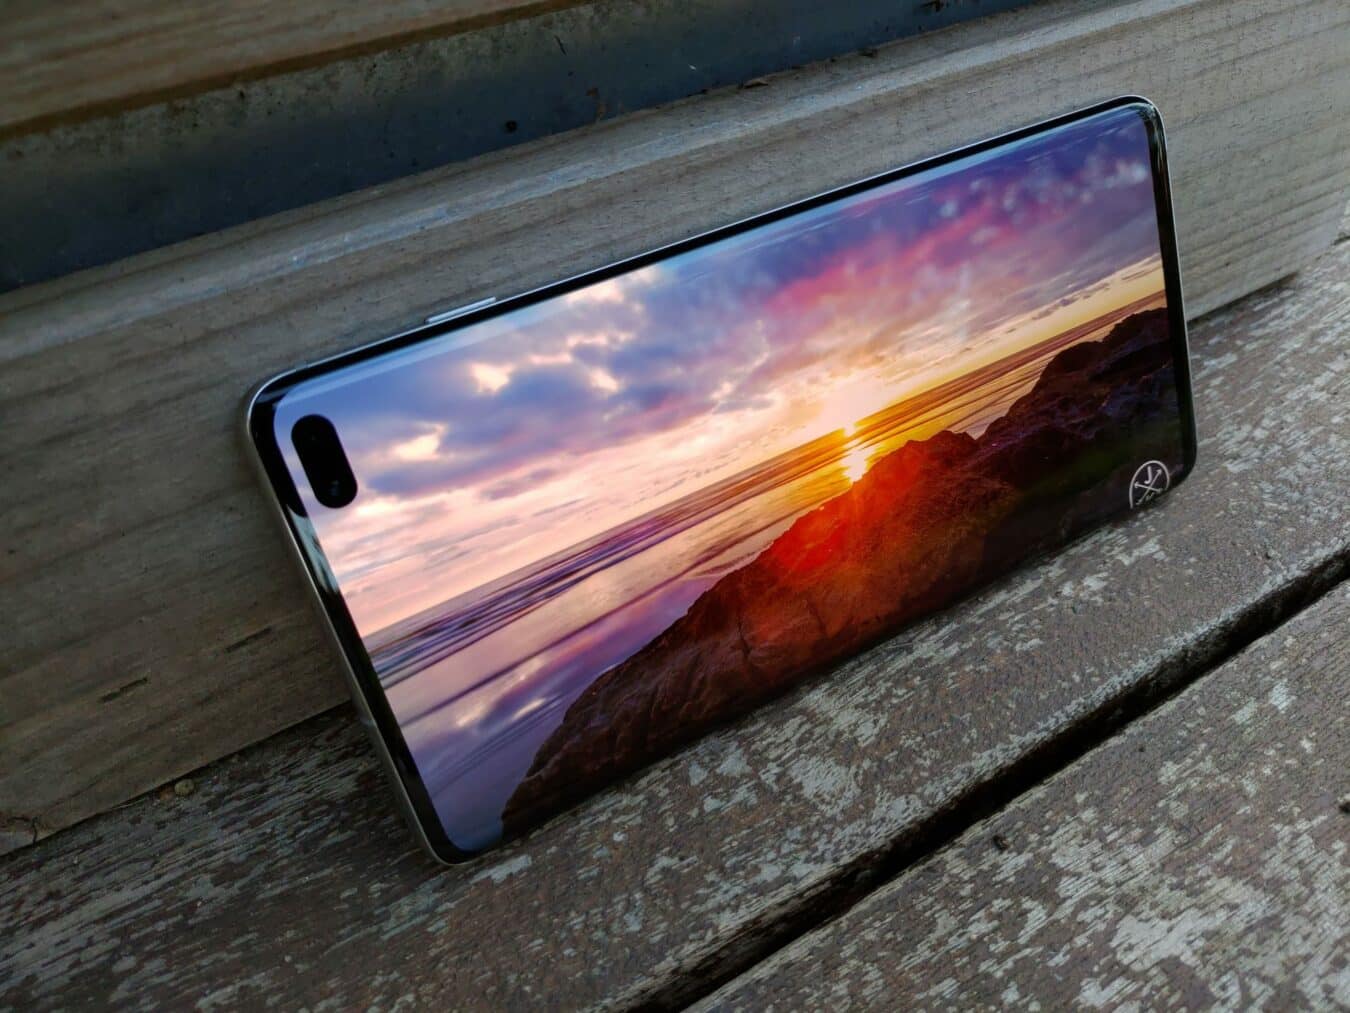 Samsung Galaxy S10+ P 20190325 074703 scaled Test – Samsung Galaxy S10+ : Proche du smartphone parfait S10+